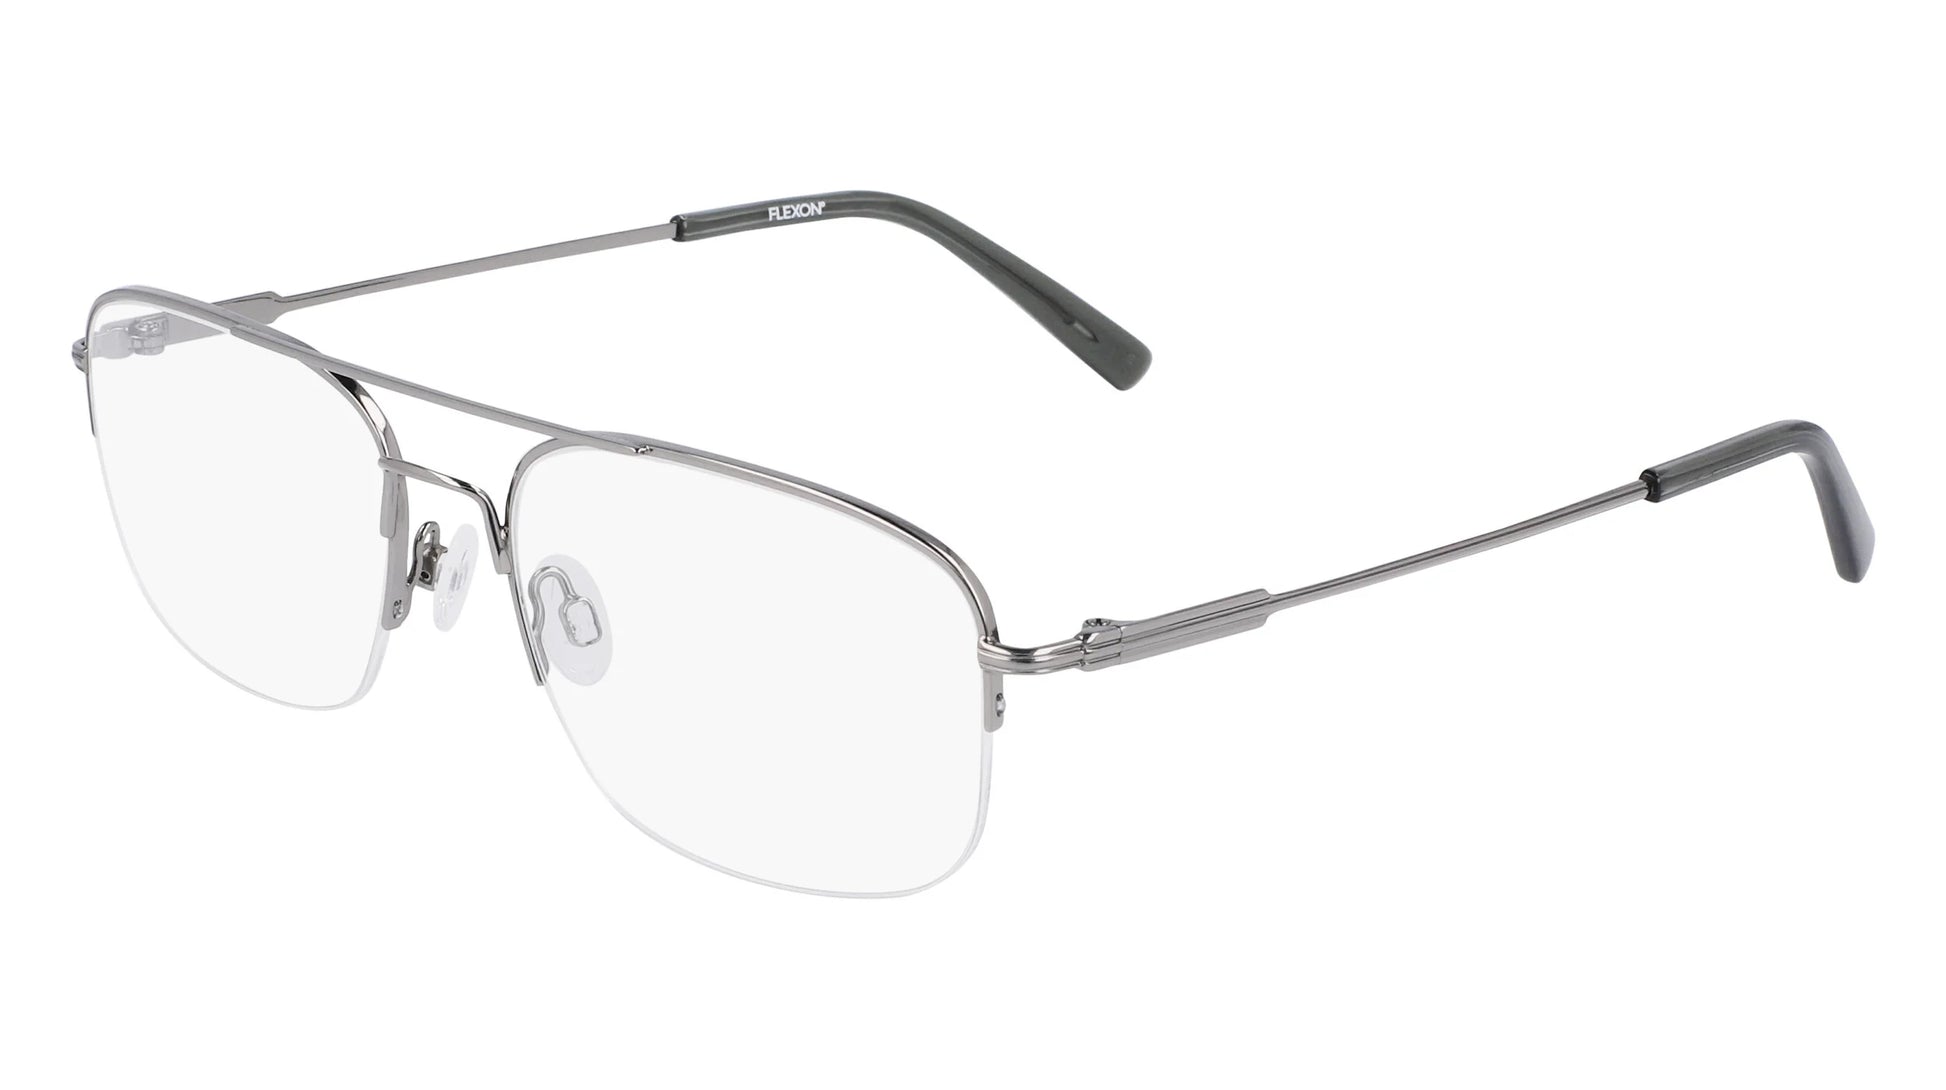 Flexon H6061 Eyeglasses Shiny Gunmetal